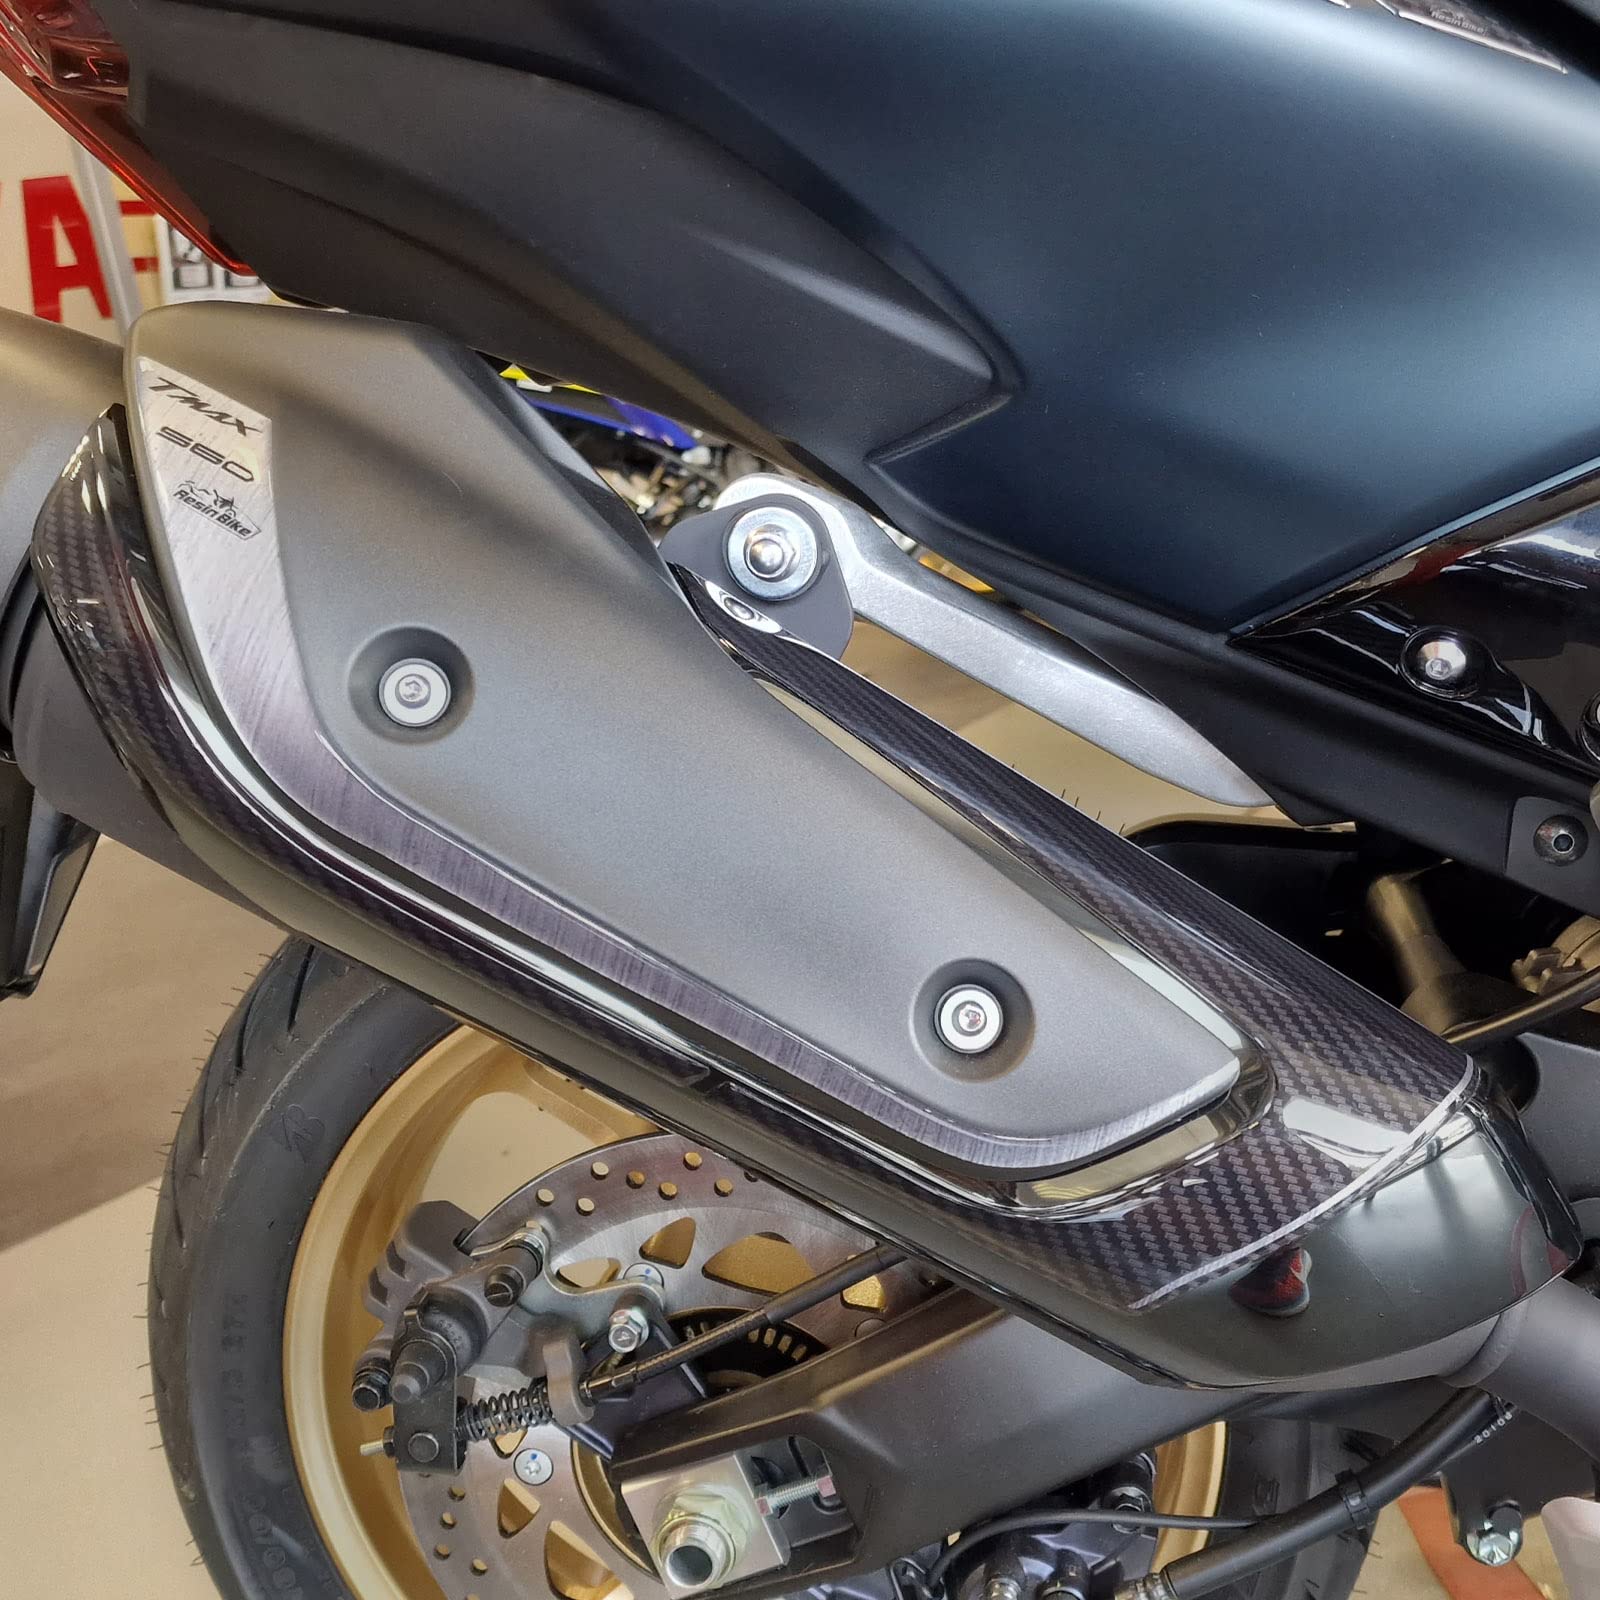 Resin Bike Aufkleber für Motorrad Kompatibel mit Yamaha Tmax 560 2022. Schutz für den Auspuffbereich vor Stößen und Kratzern. 3D-Harzklebstoff - Stickers - Made in Italy von Resin Bike